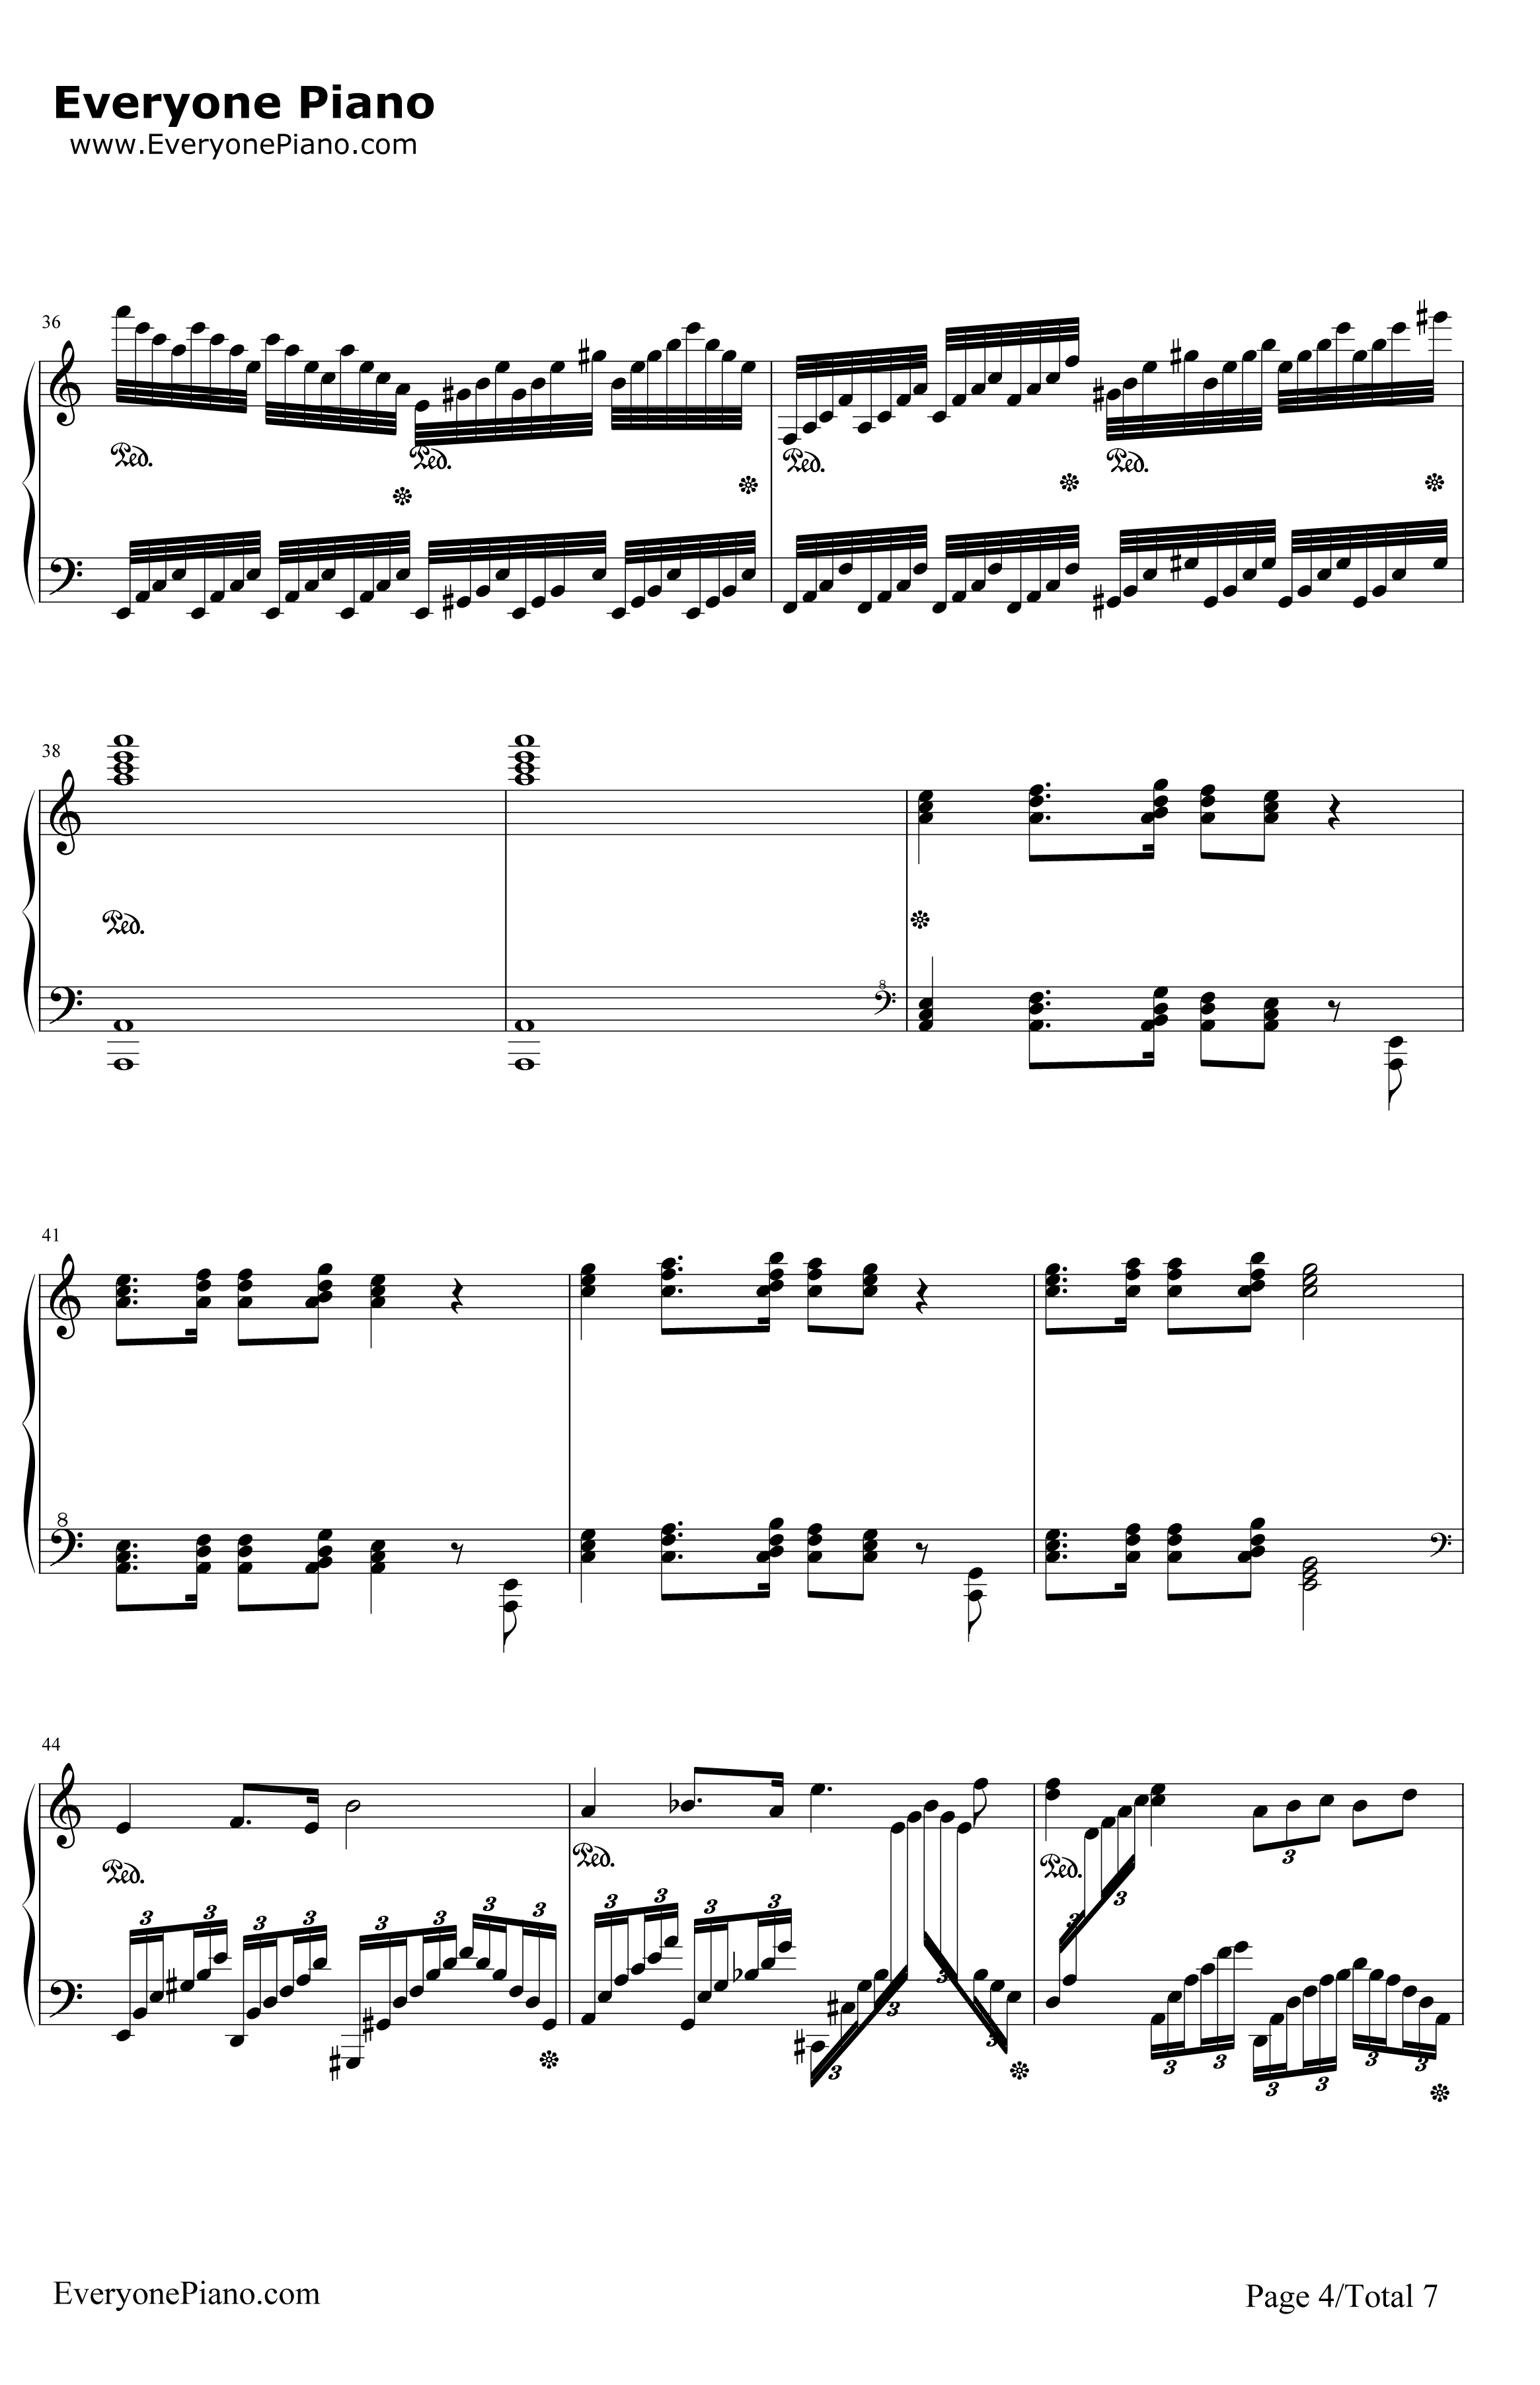 格里格钢琴变奏曲钢琴谱-马克西姆-格里格钢琴变奏曲4